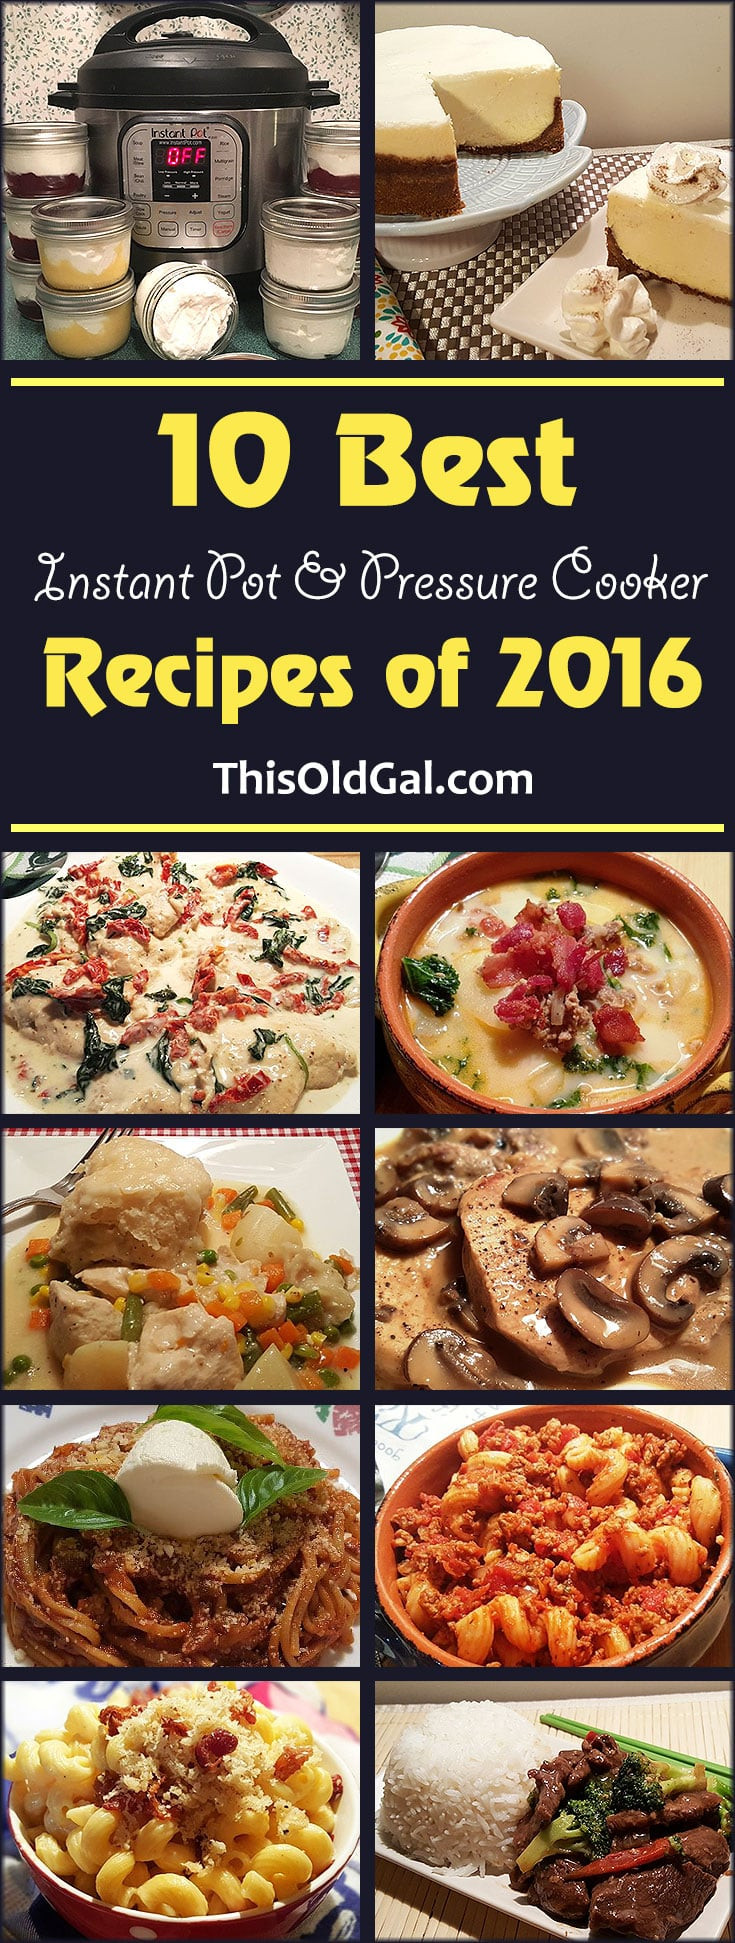 Top 10 Instant Pot Recipes
 10 Best Instant Pot and Pressure Cooker Recipes of 2016